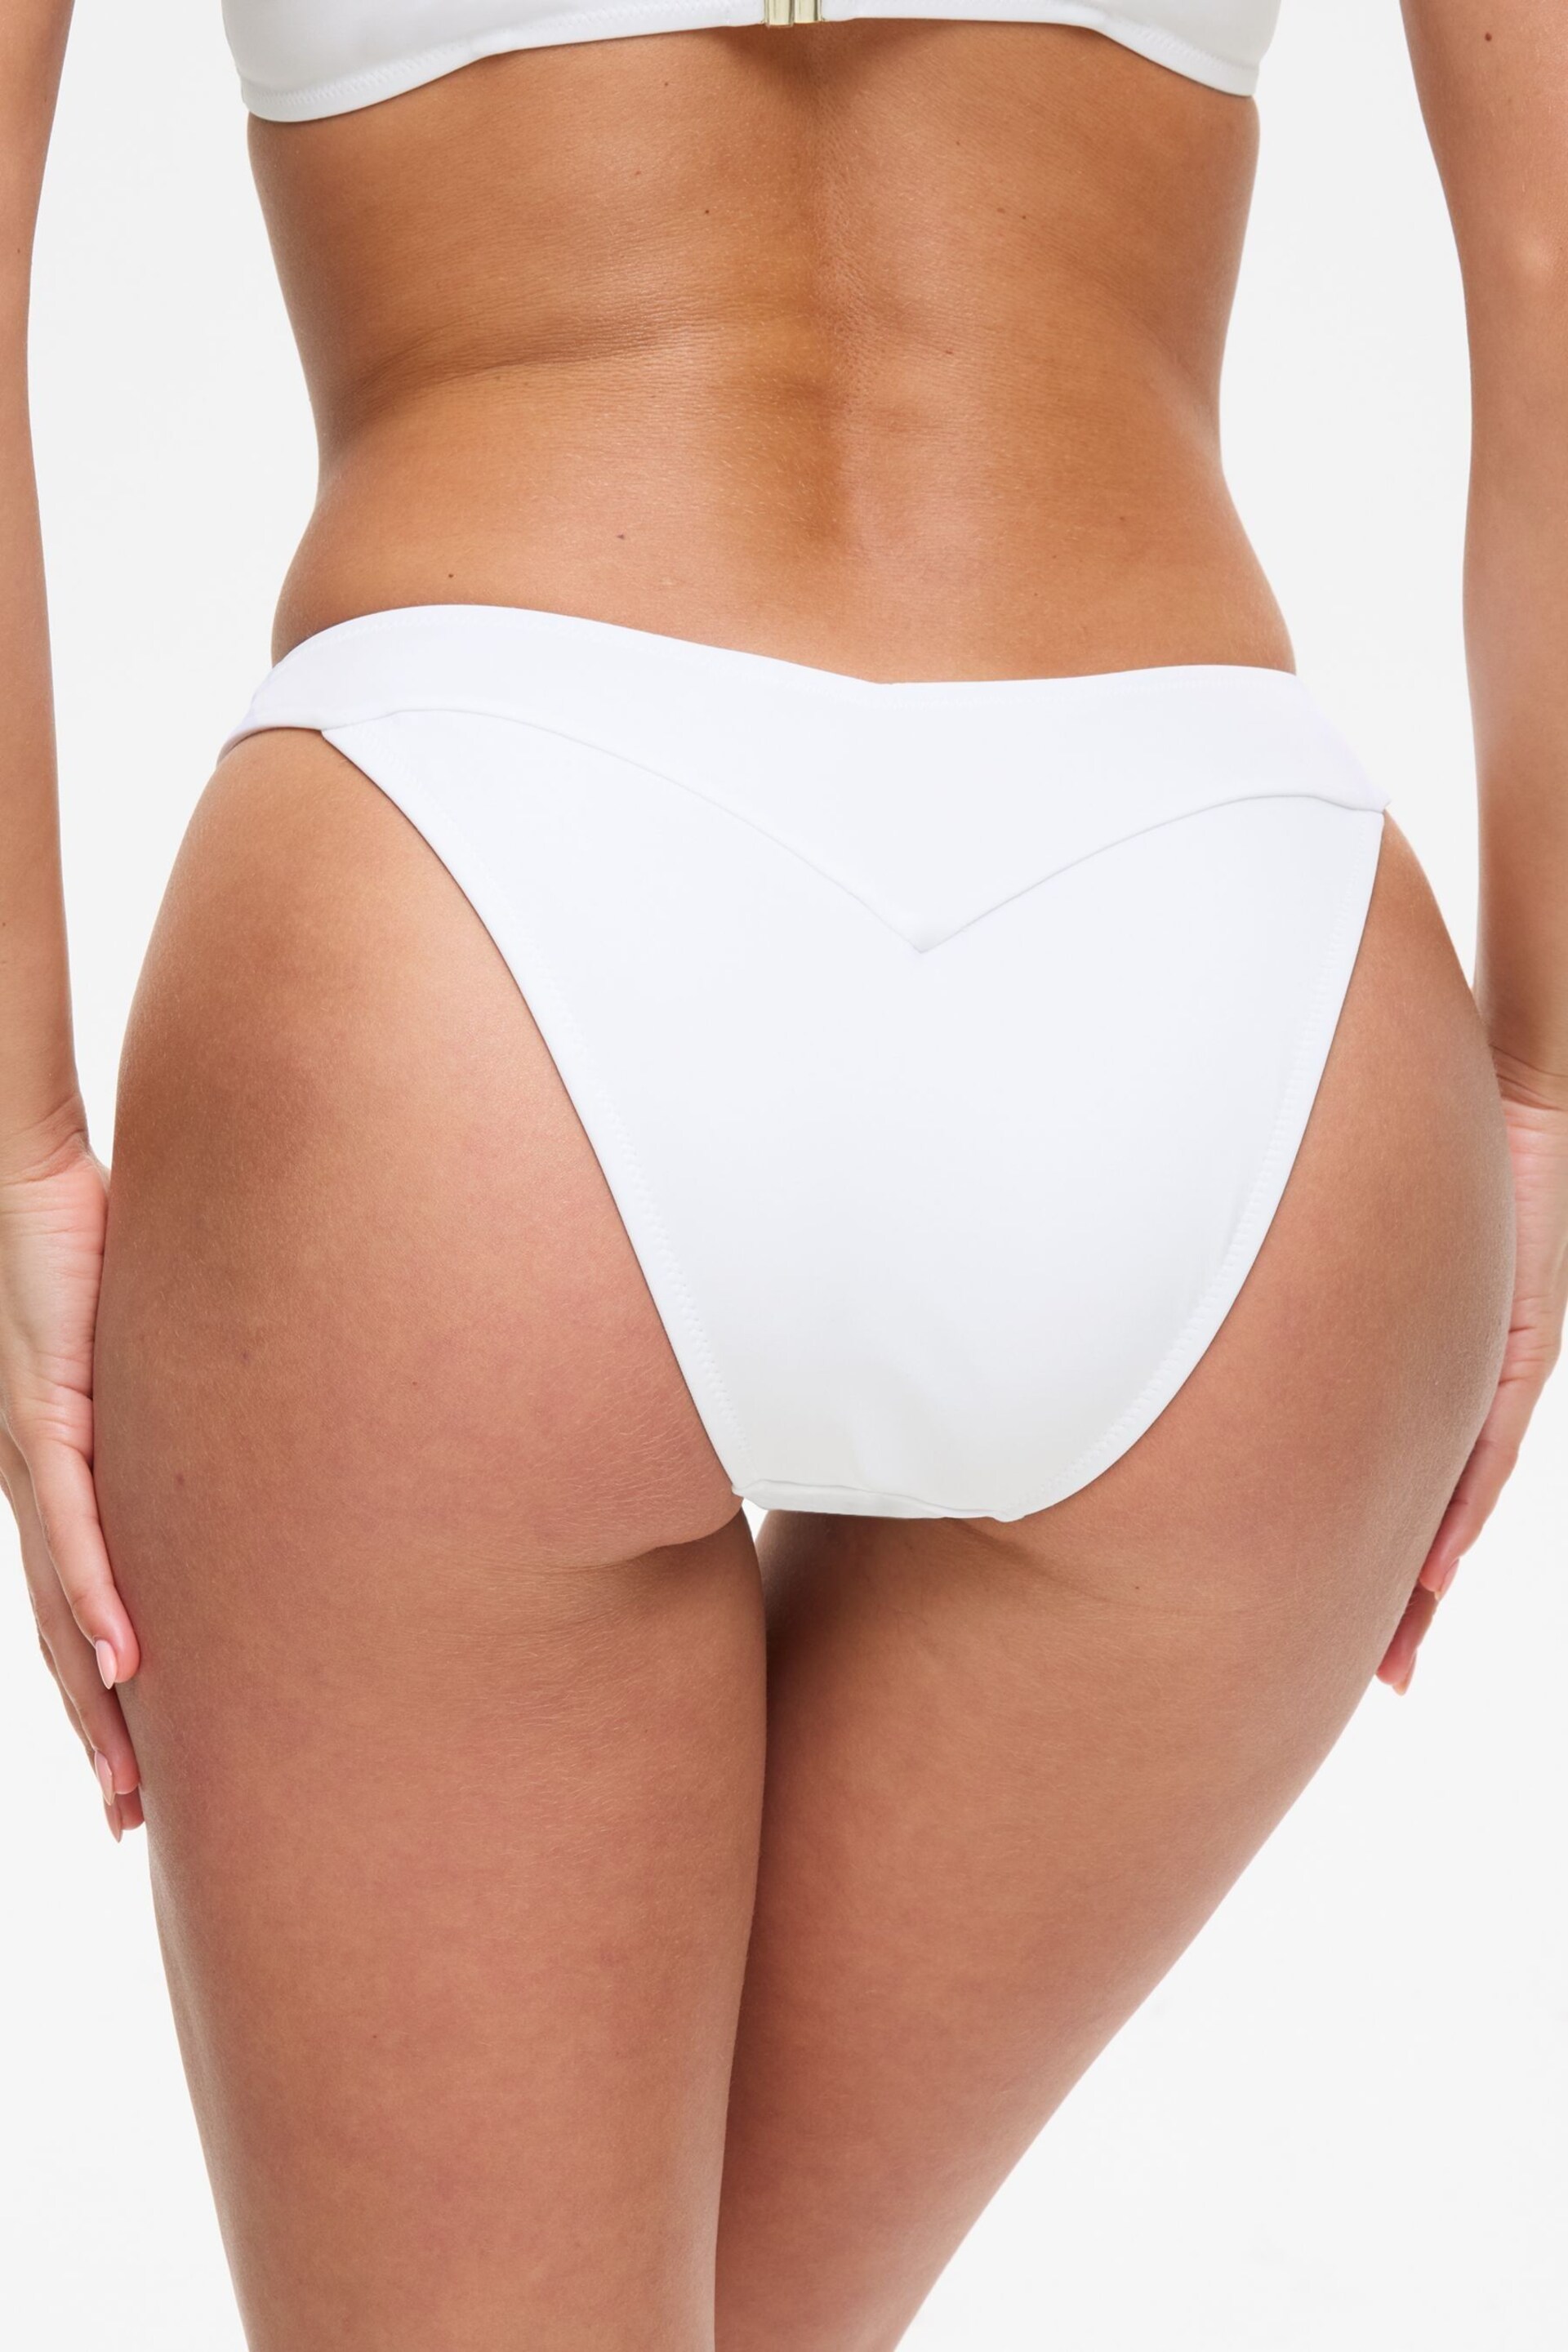 Ann Summers Miami Dreams Brazilian White Bikini Bottom - Image 2 of 5